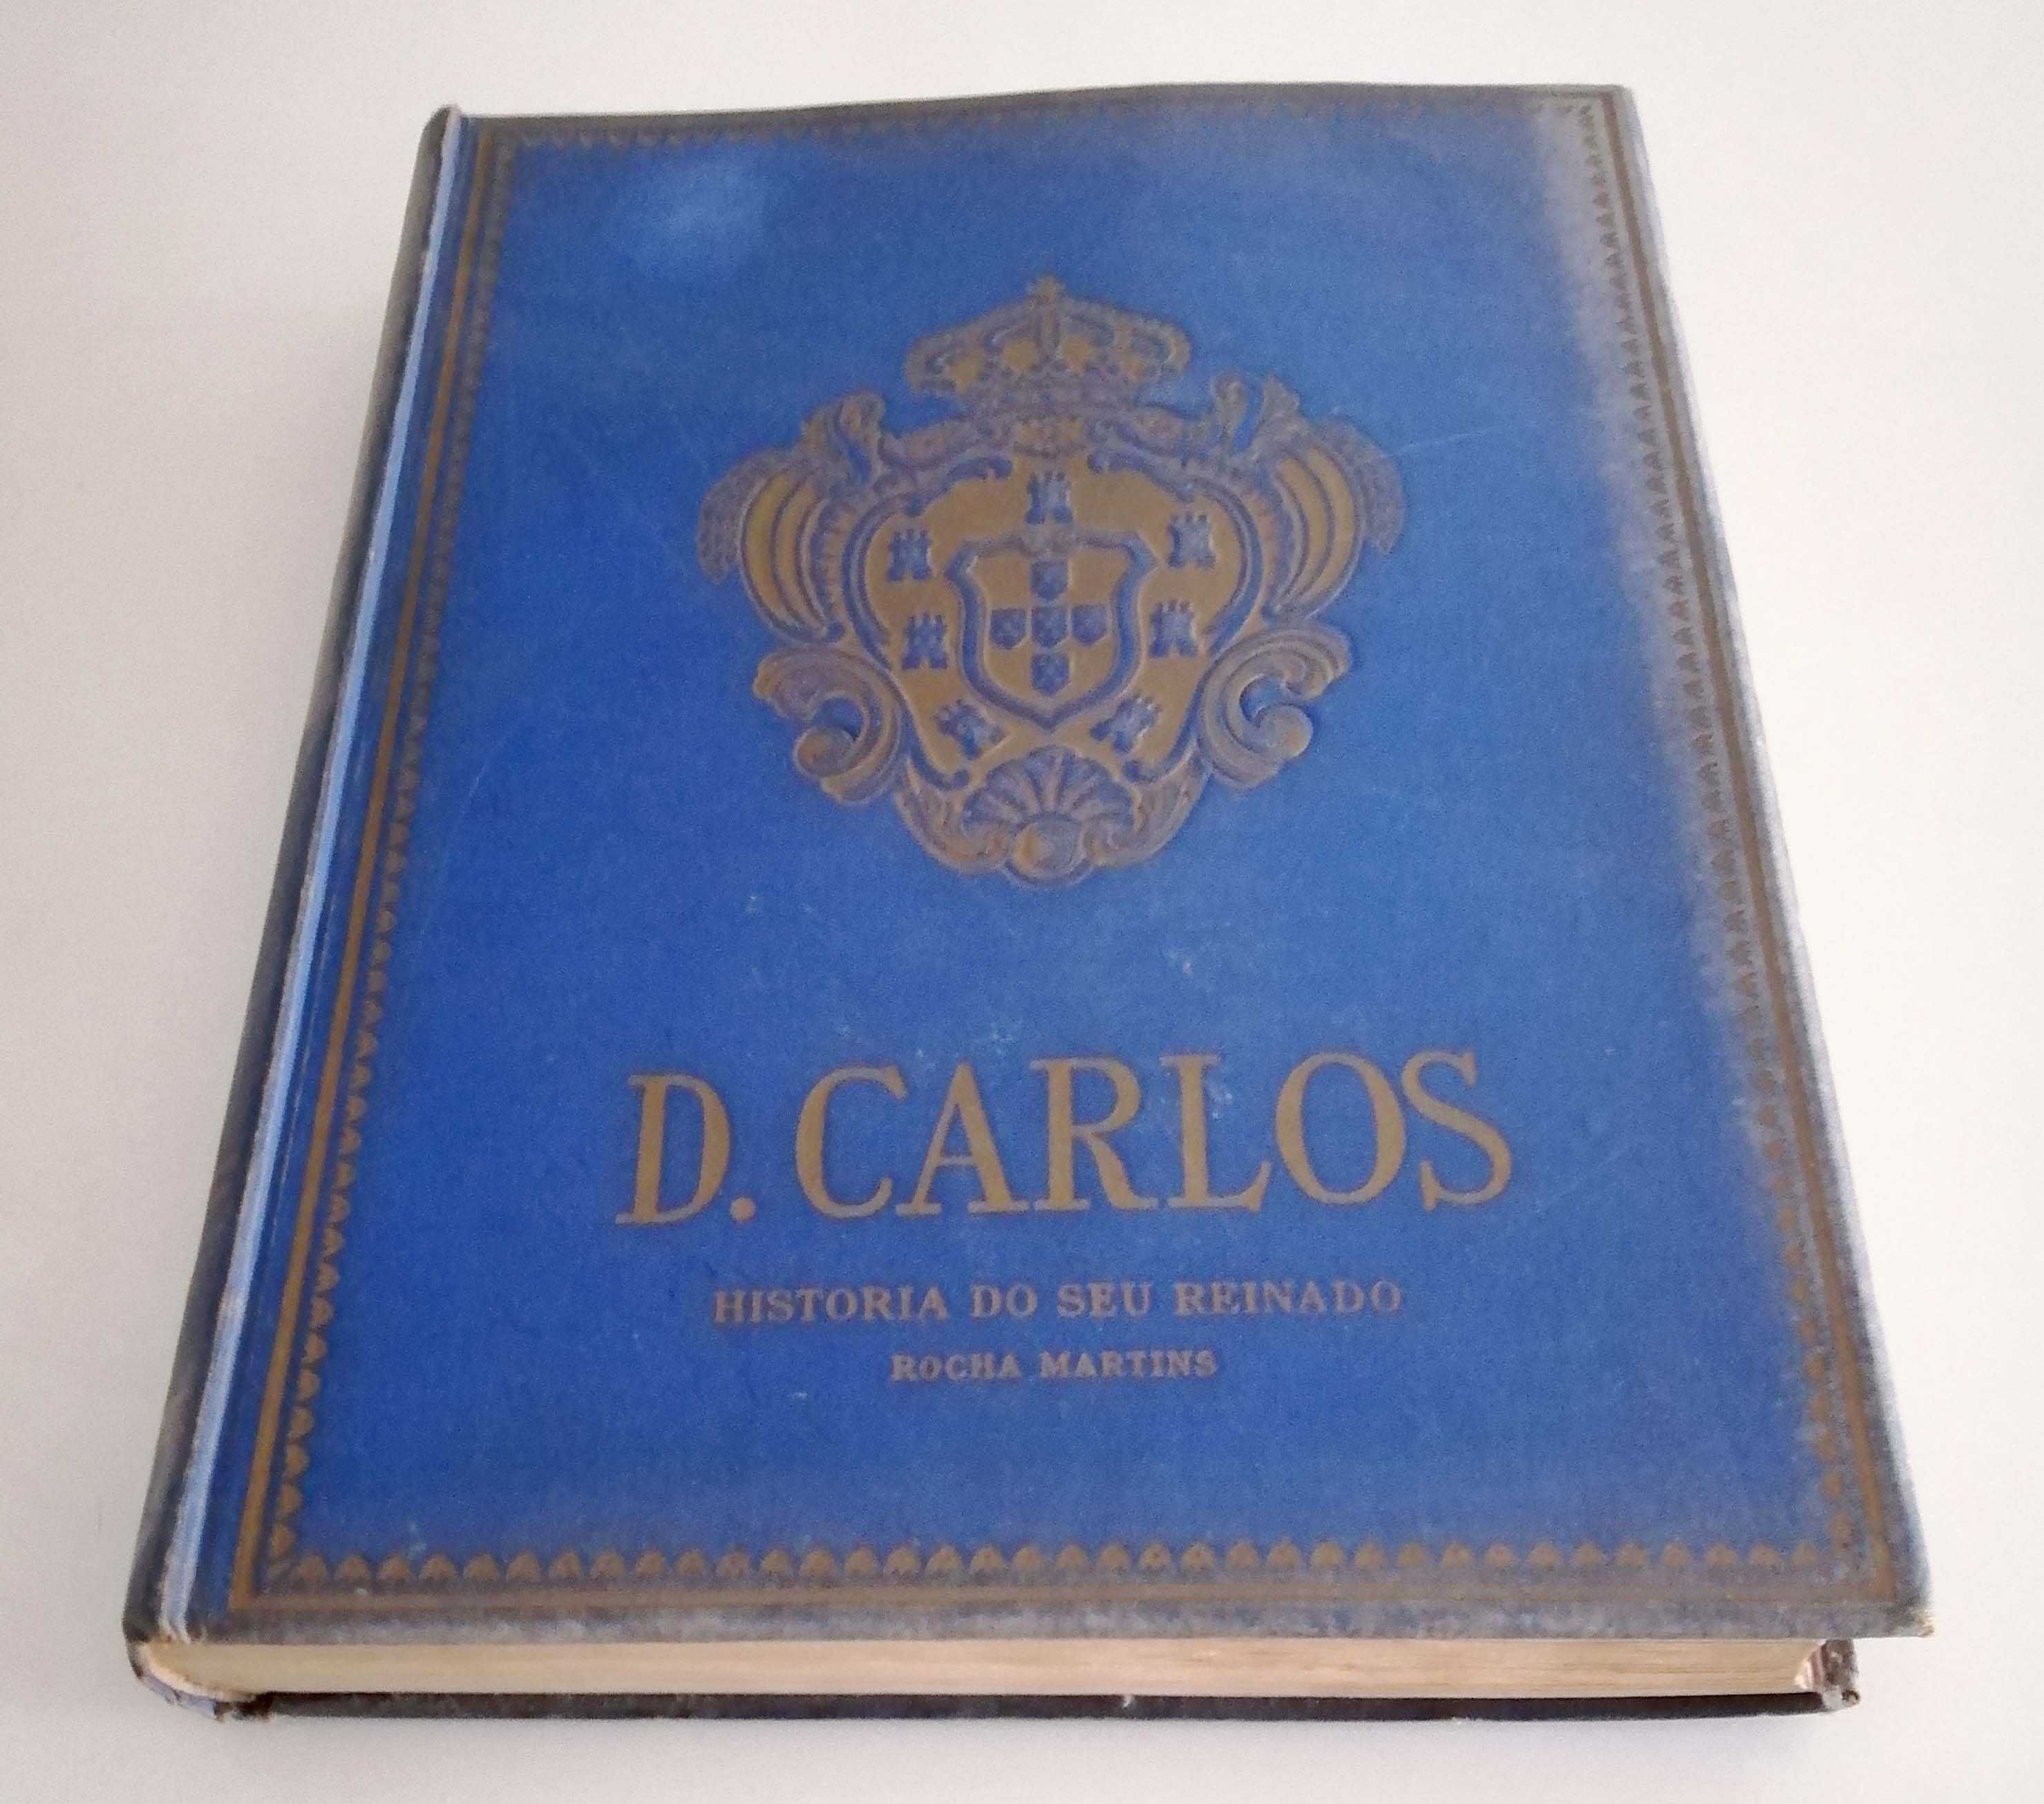 Livro D. Carlos - História do Seu Reinado, de Rocha Martins